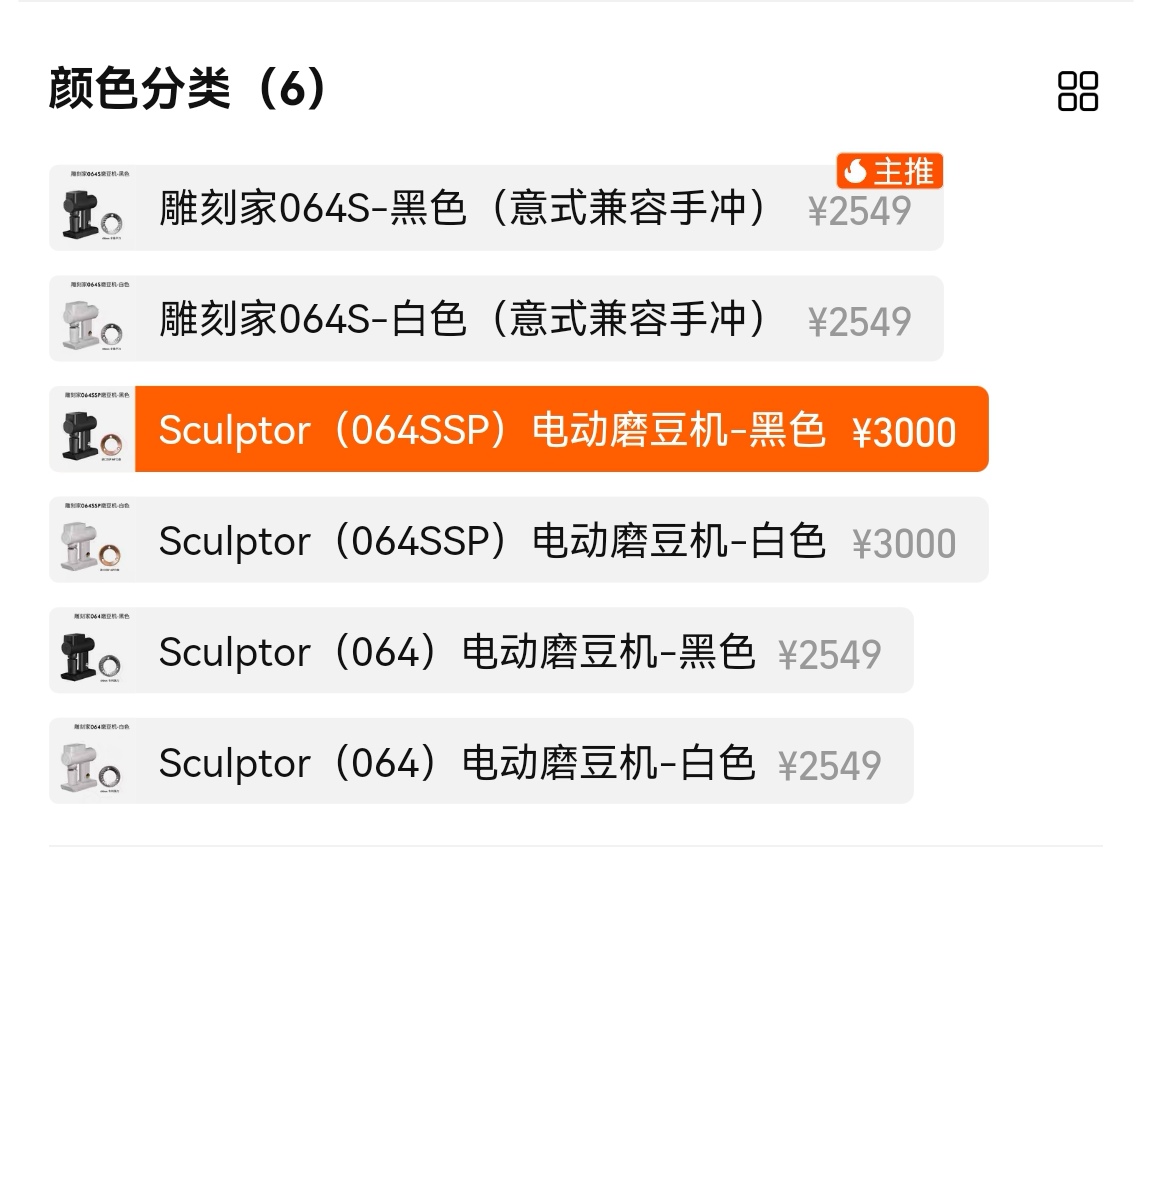 TimemoreのSculptorに064SSPの設定が追加されていました👀
(multi-purpose)

6月の中国のプラットフォームのセールが前倒しで始まっている模様で、lagom casaは発売までまだ4-6週間かかるみたいなので間に合わなそう...